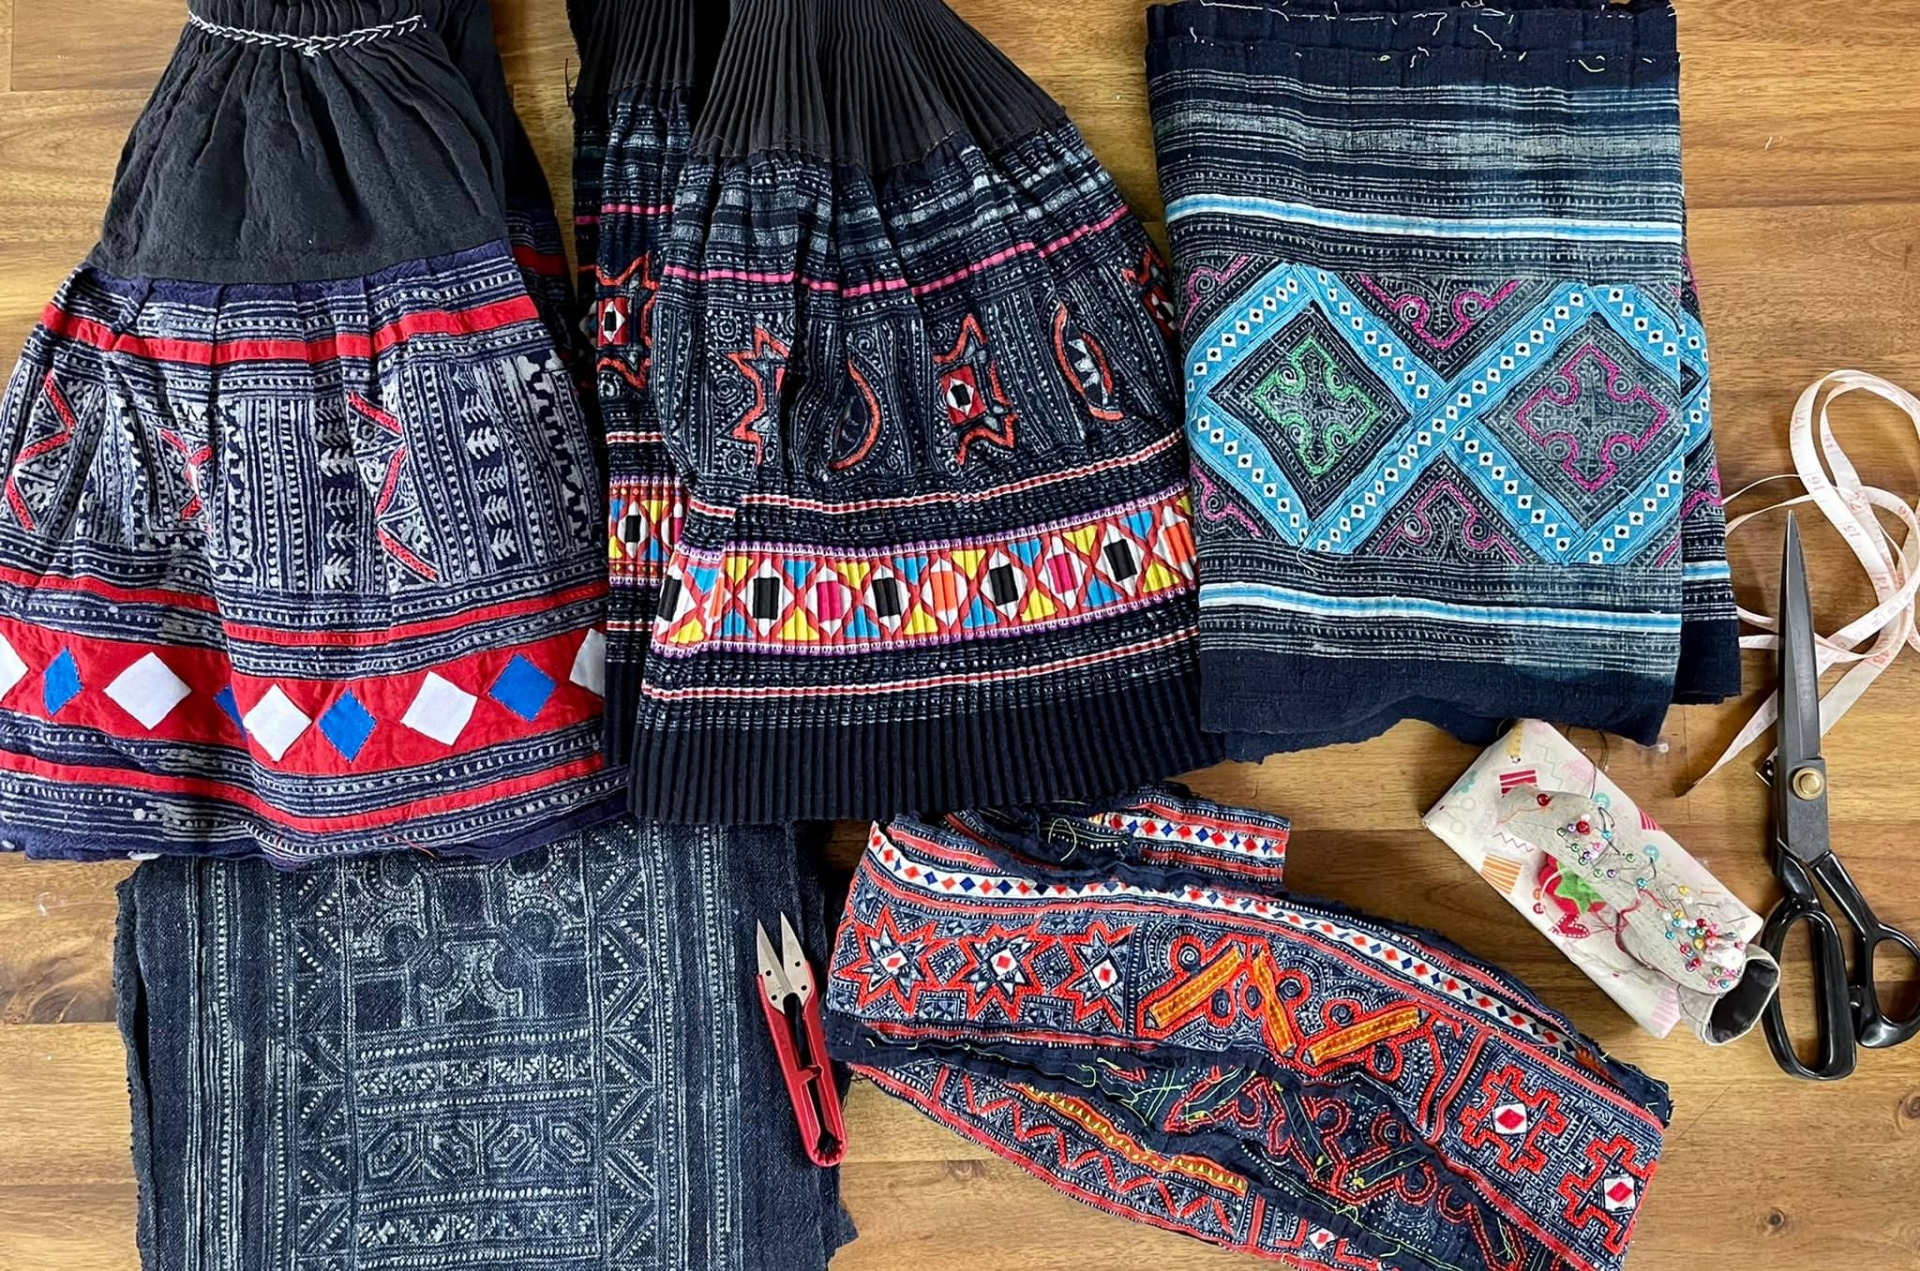 Những ngành nghề dệt may truyền thống của Việt Nam vô cùng tinh xảo và có giá trị văn hoá cao.